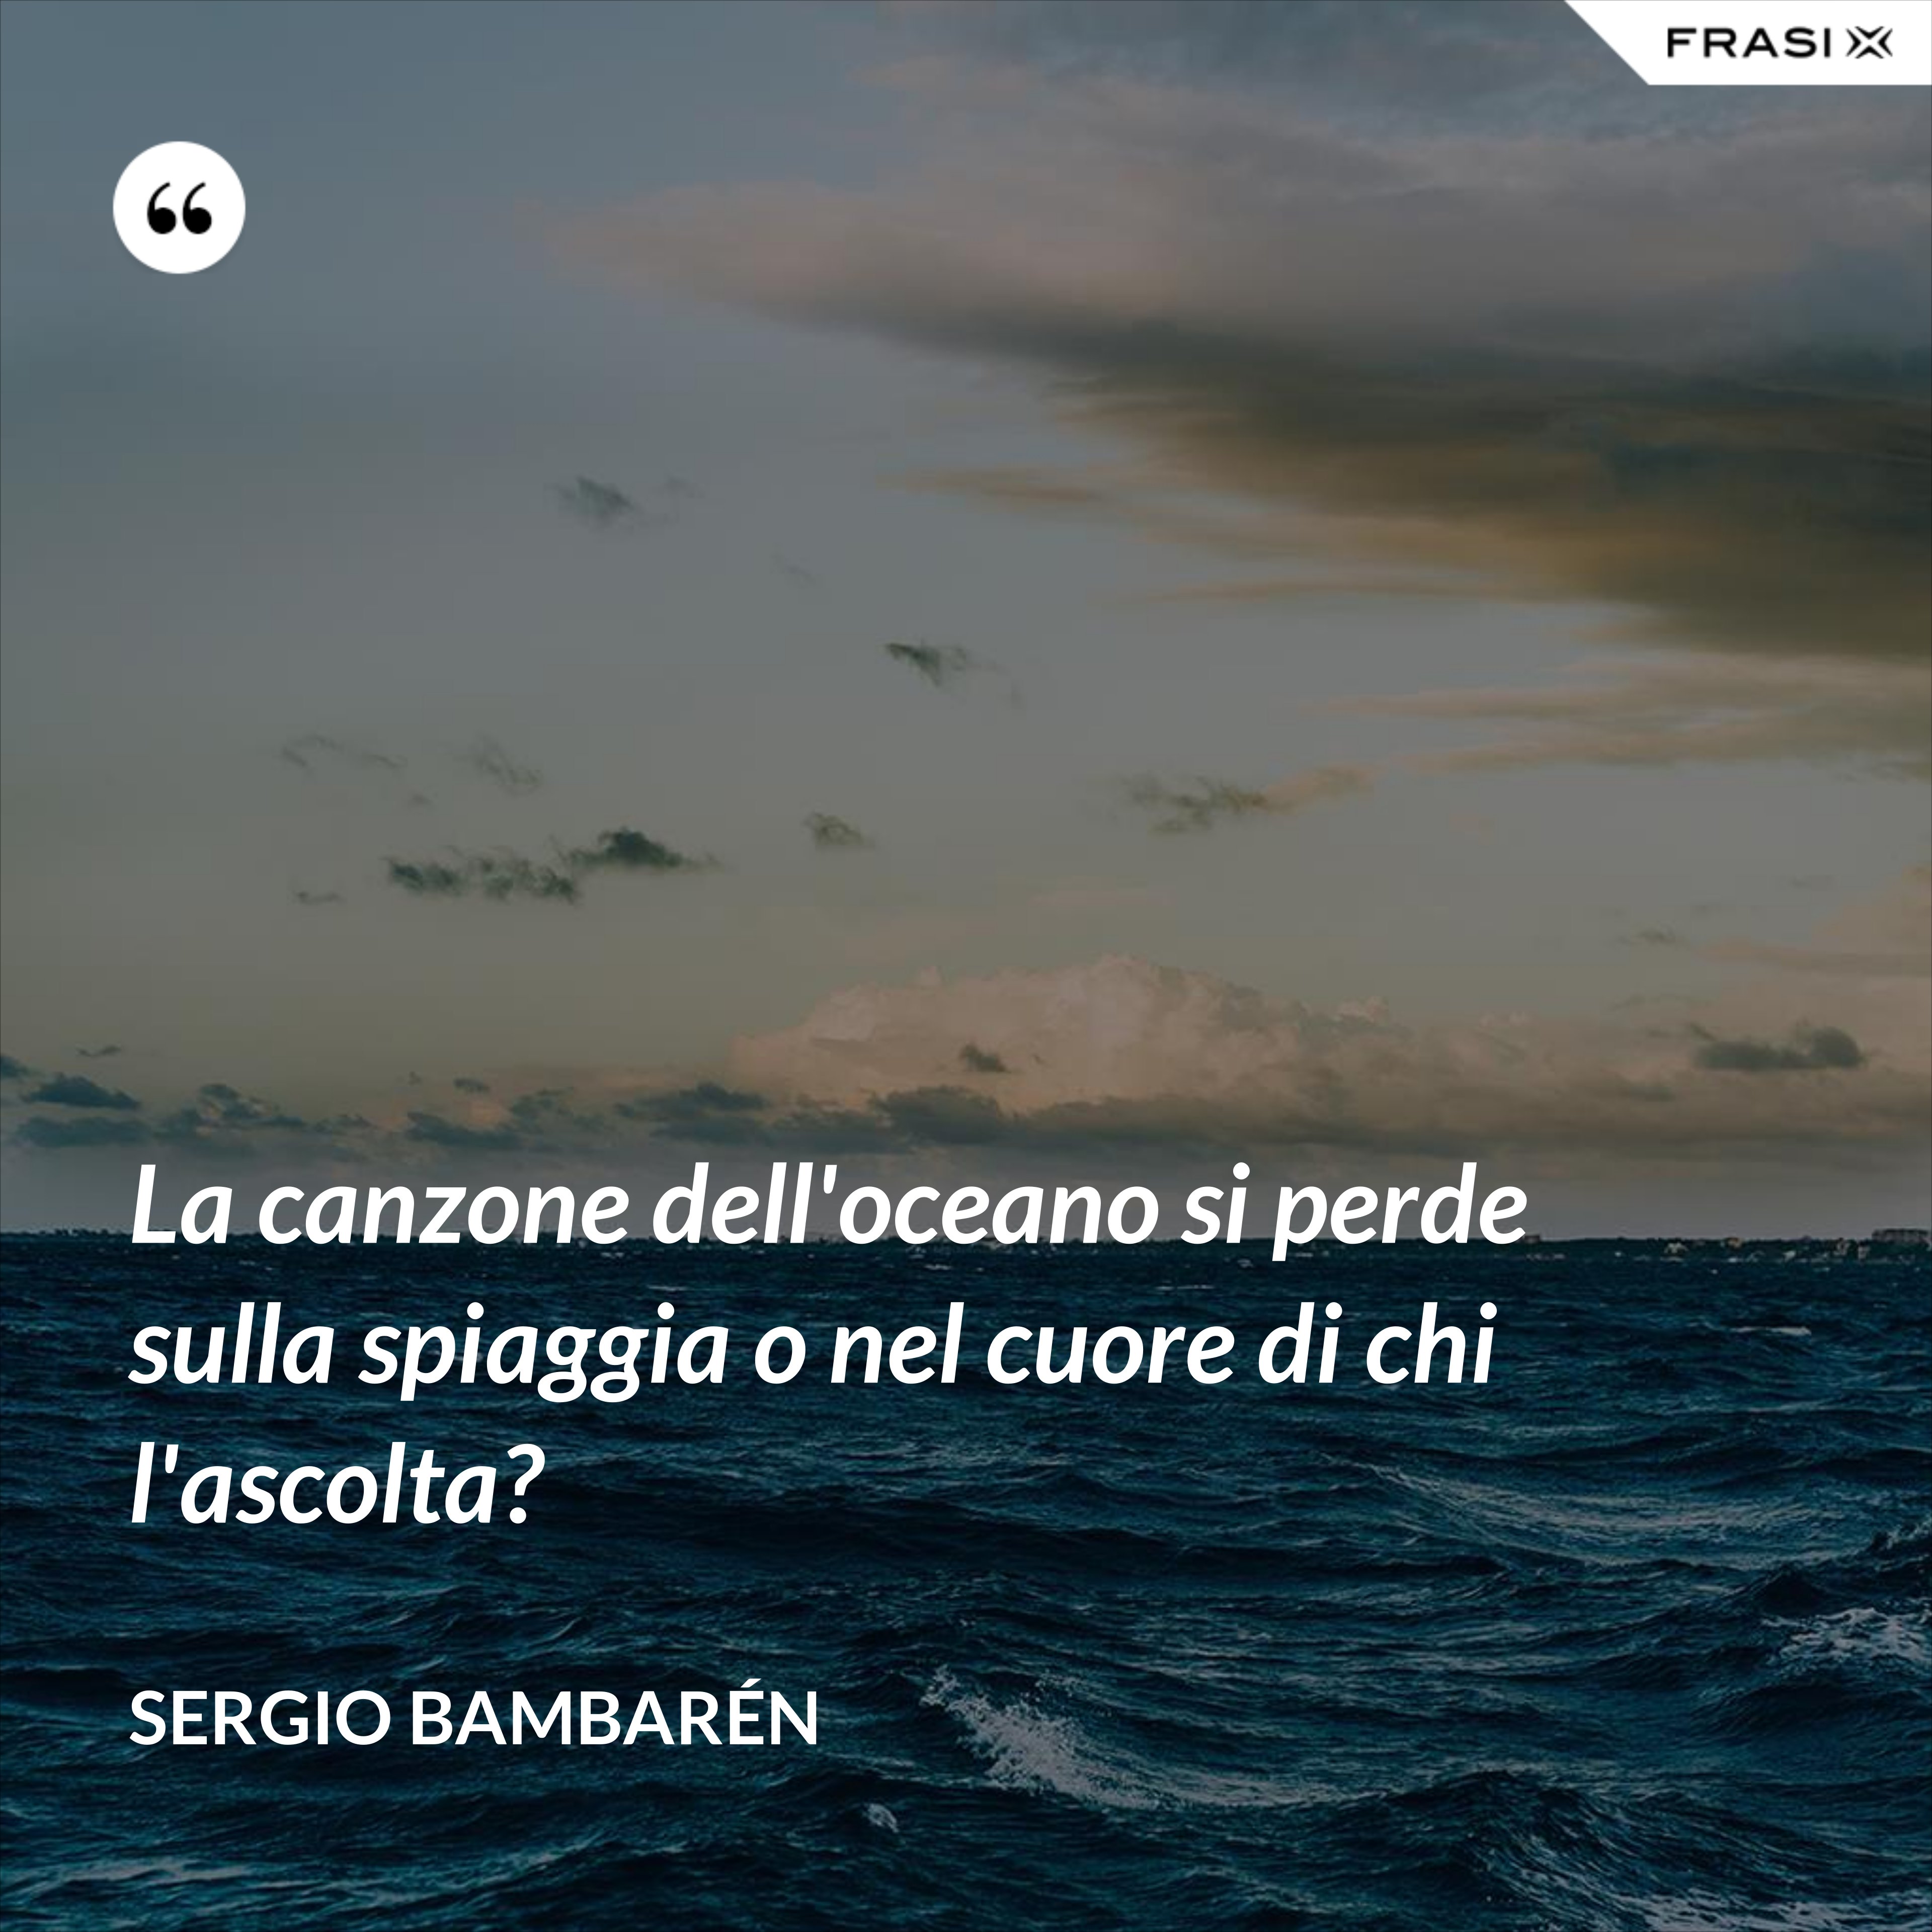 La canzone dell'oceano si perde sulla spiaggia o nel cuore di chi l'ascolta? - Sergio Bambarén